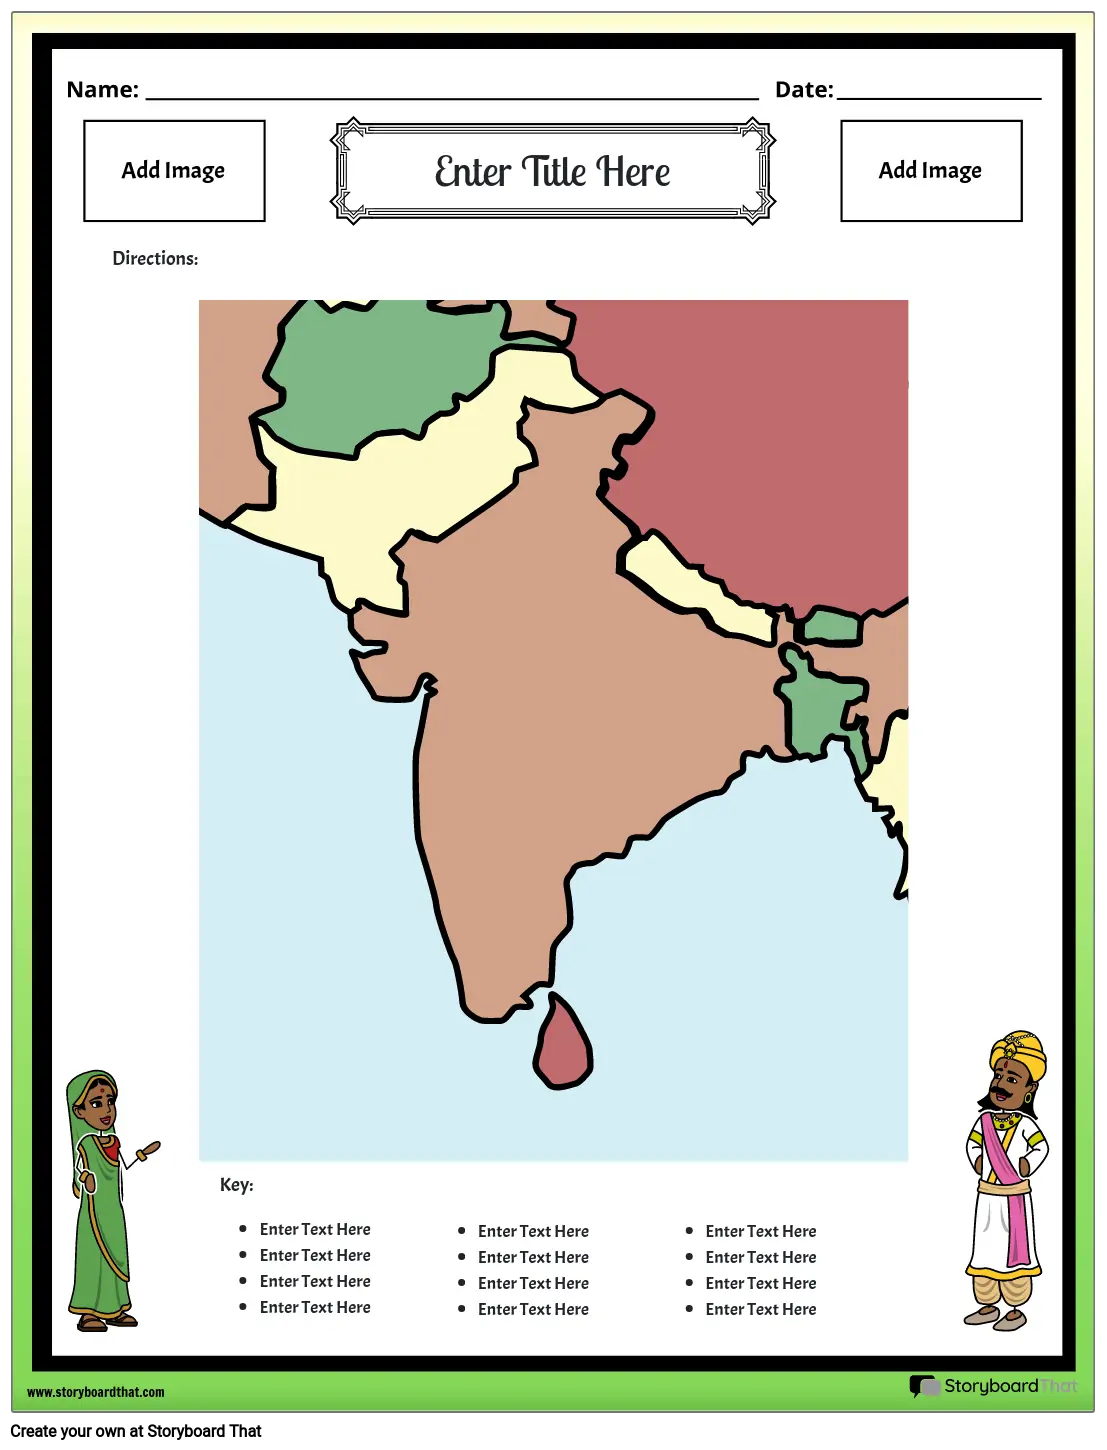 מפת הודו